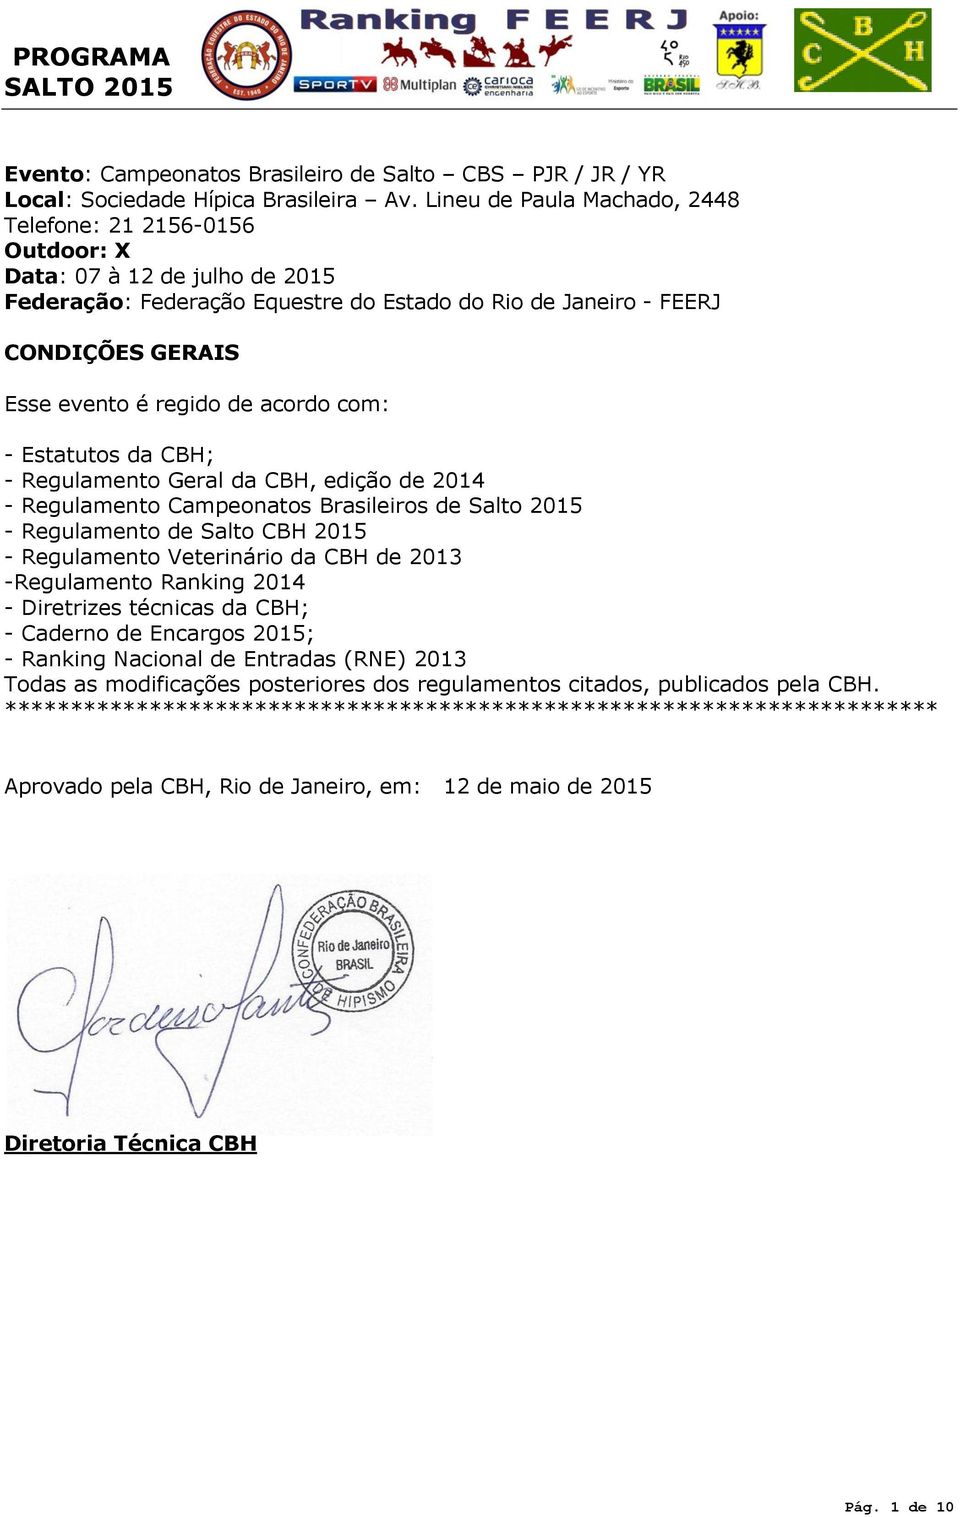 de acordo com: - Estatutos da CBH; - Regulamento Geral da CBH, edição de 2014 - Regulamento Campeonatos Brasileiros de Salto 2015 - Regulamento de Salto CBH 2015 - Regulamento Veterinário da CBH de